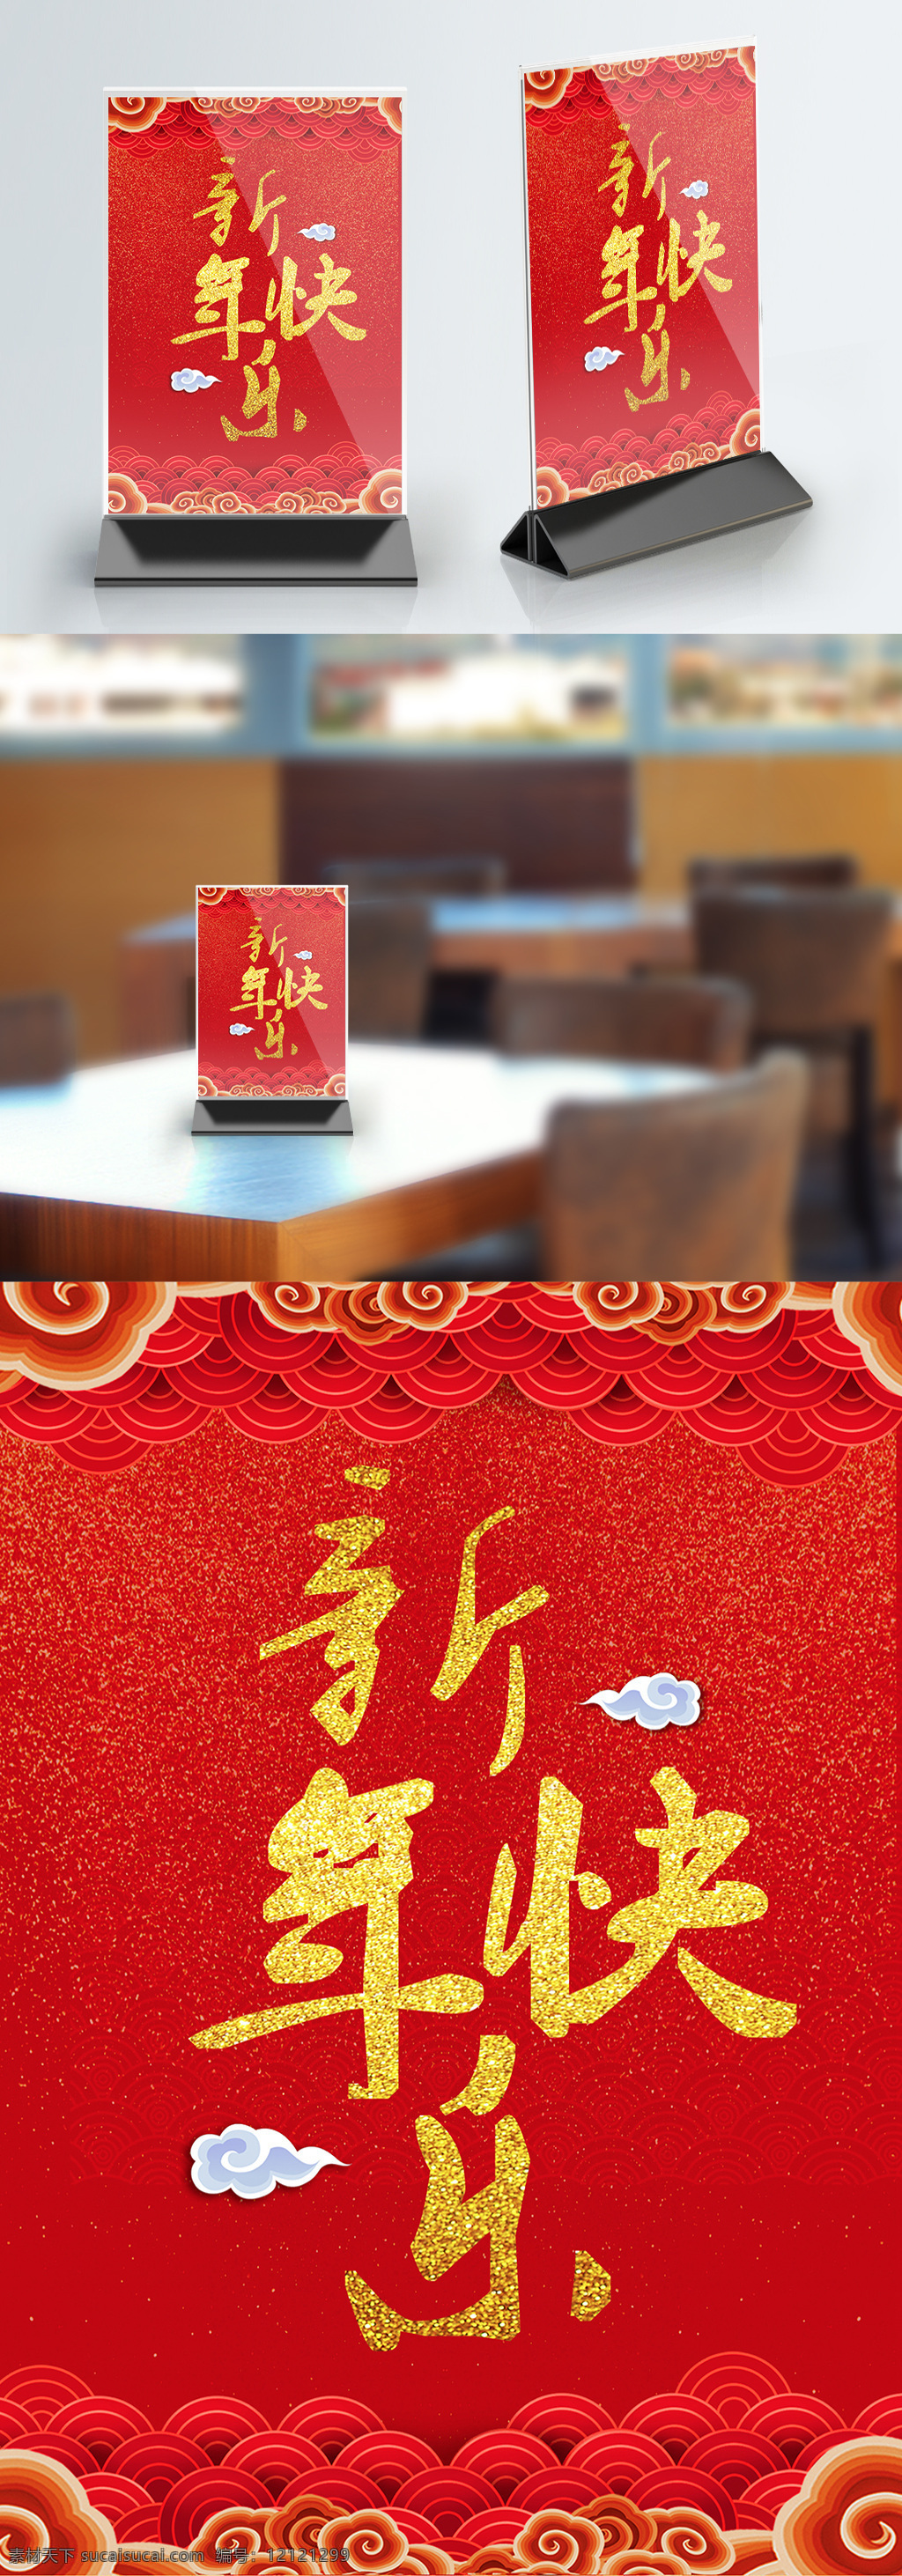 红色 喜庆 大气 新年 快乐 桌 卡 新年快乐 签到处 台卡 新年快乐桌卡 桌卡 活动桌卡 桌牌设计